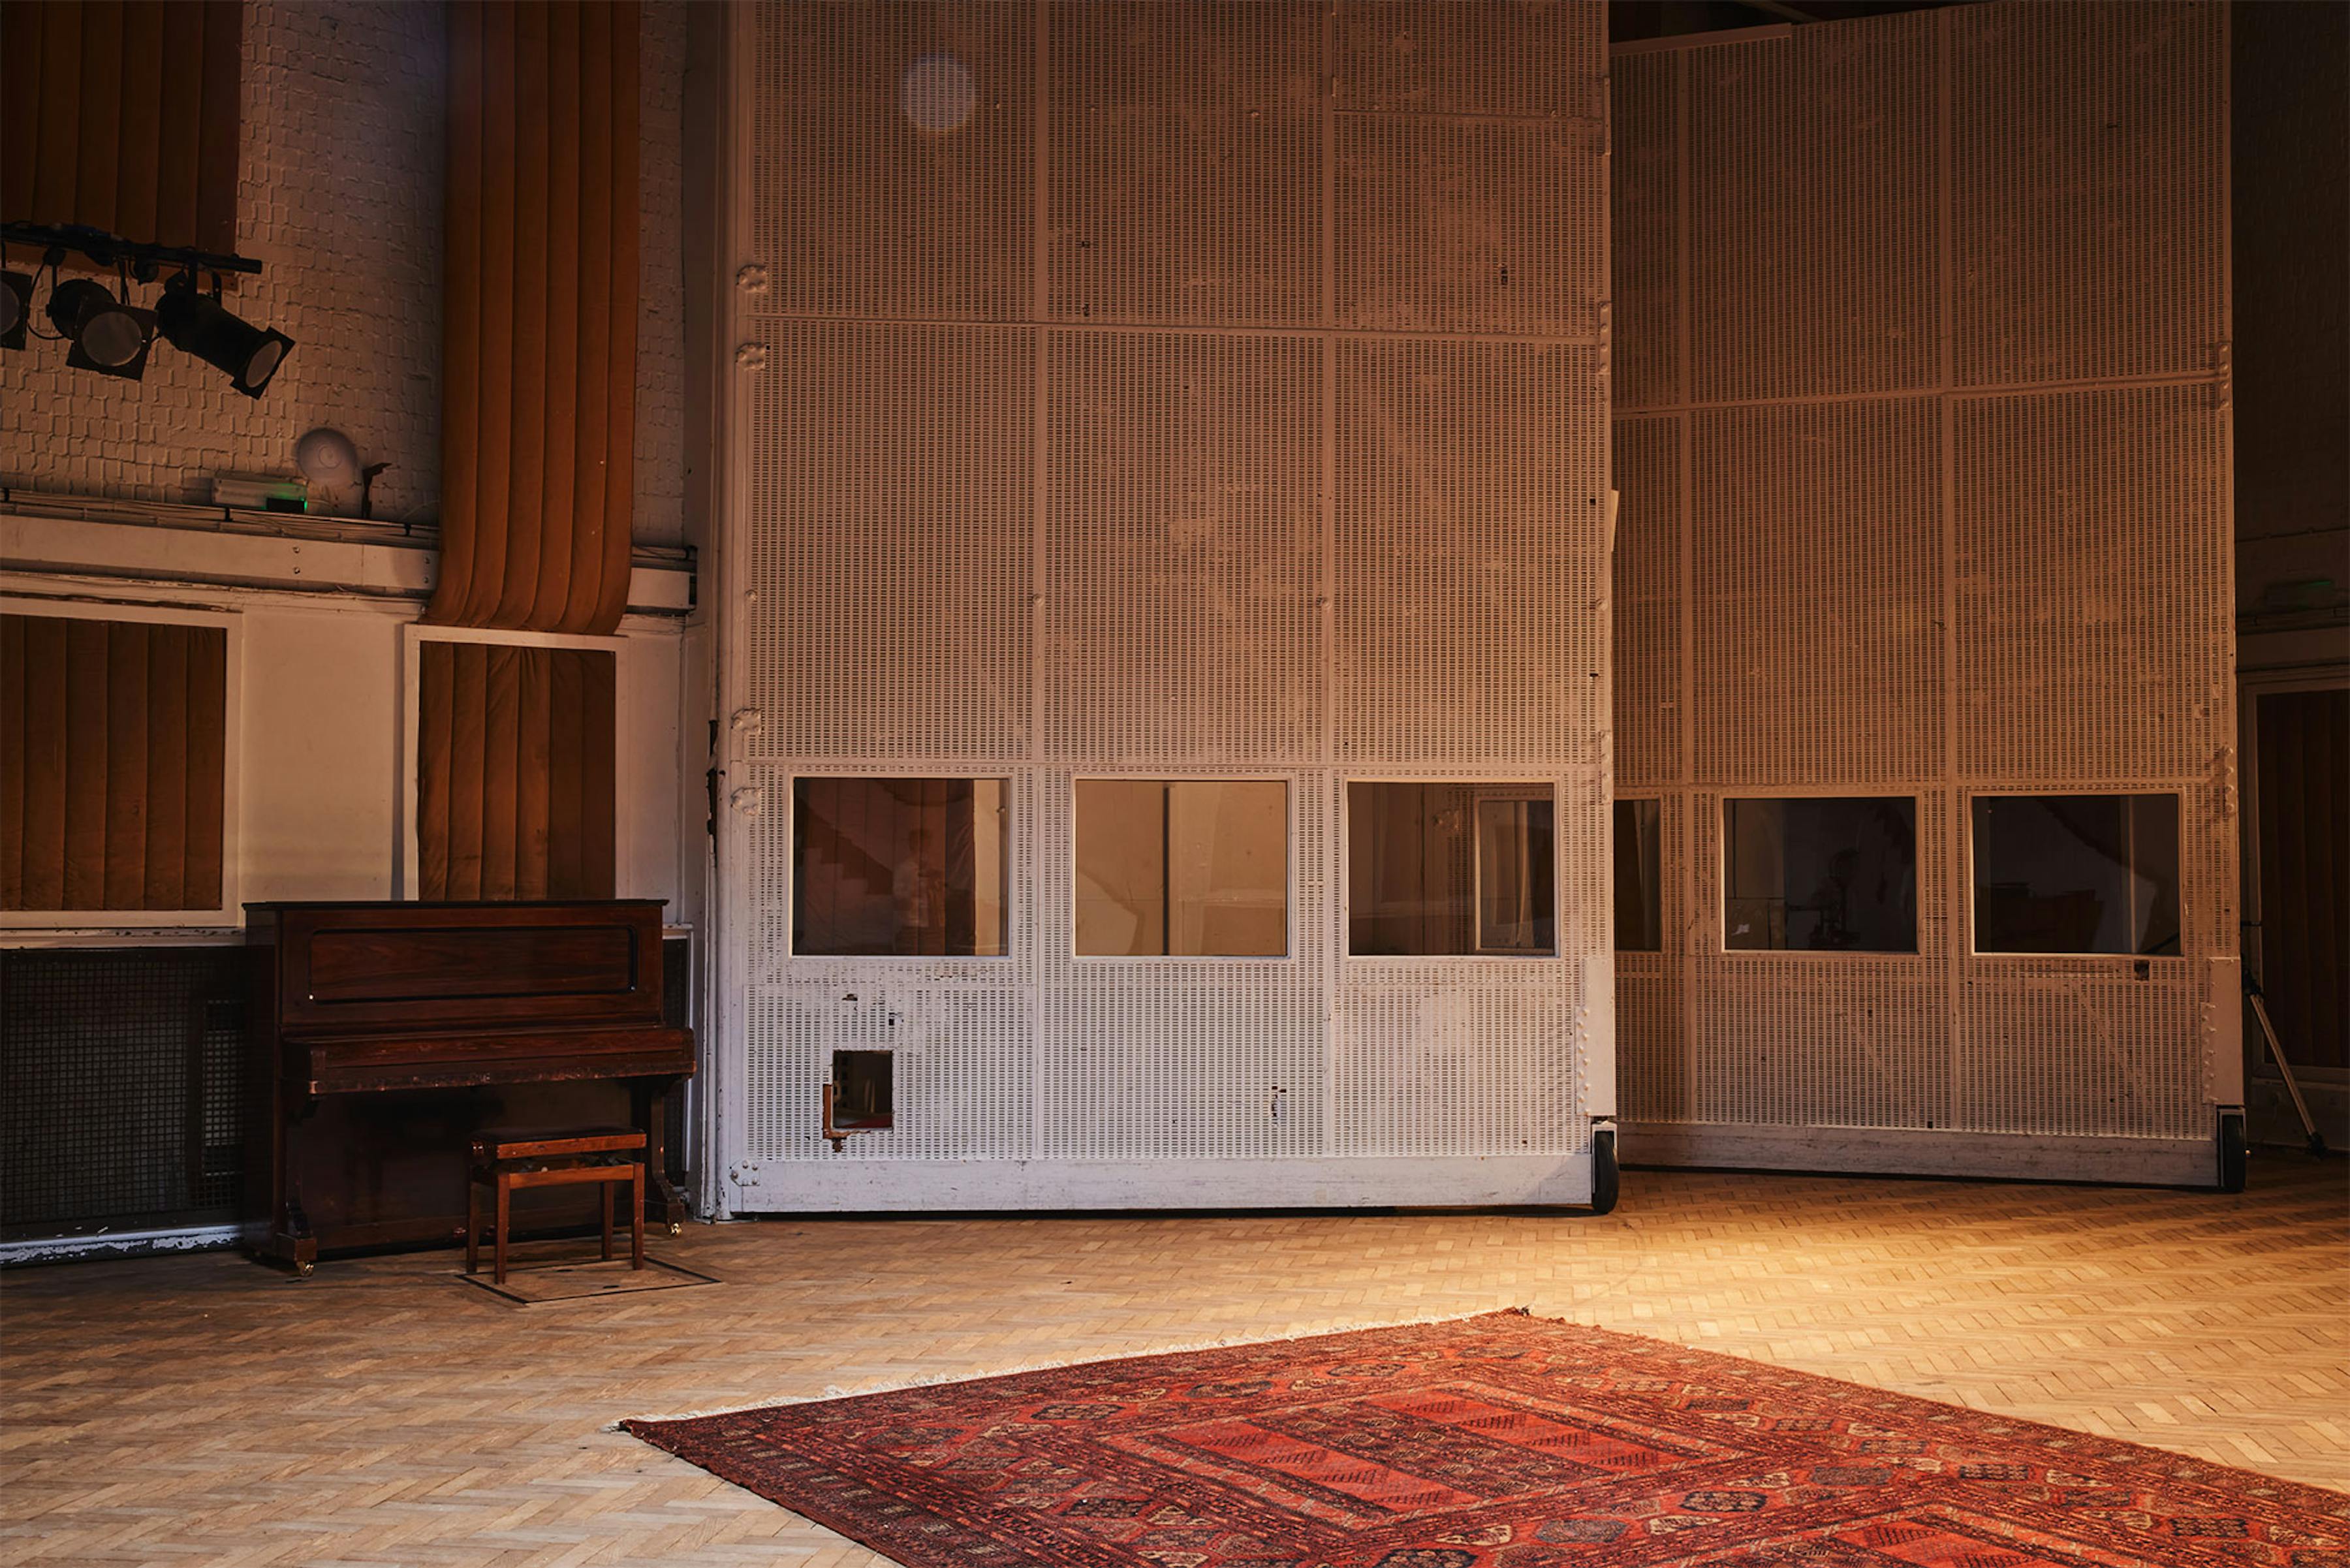 Abbey Road empty studio two